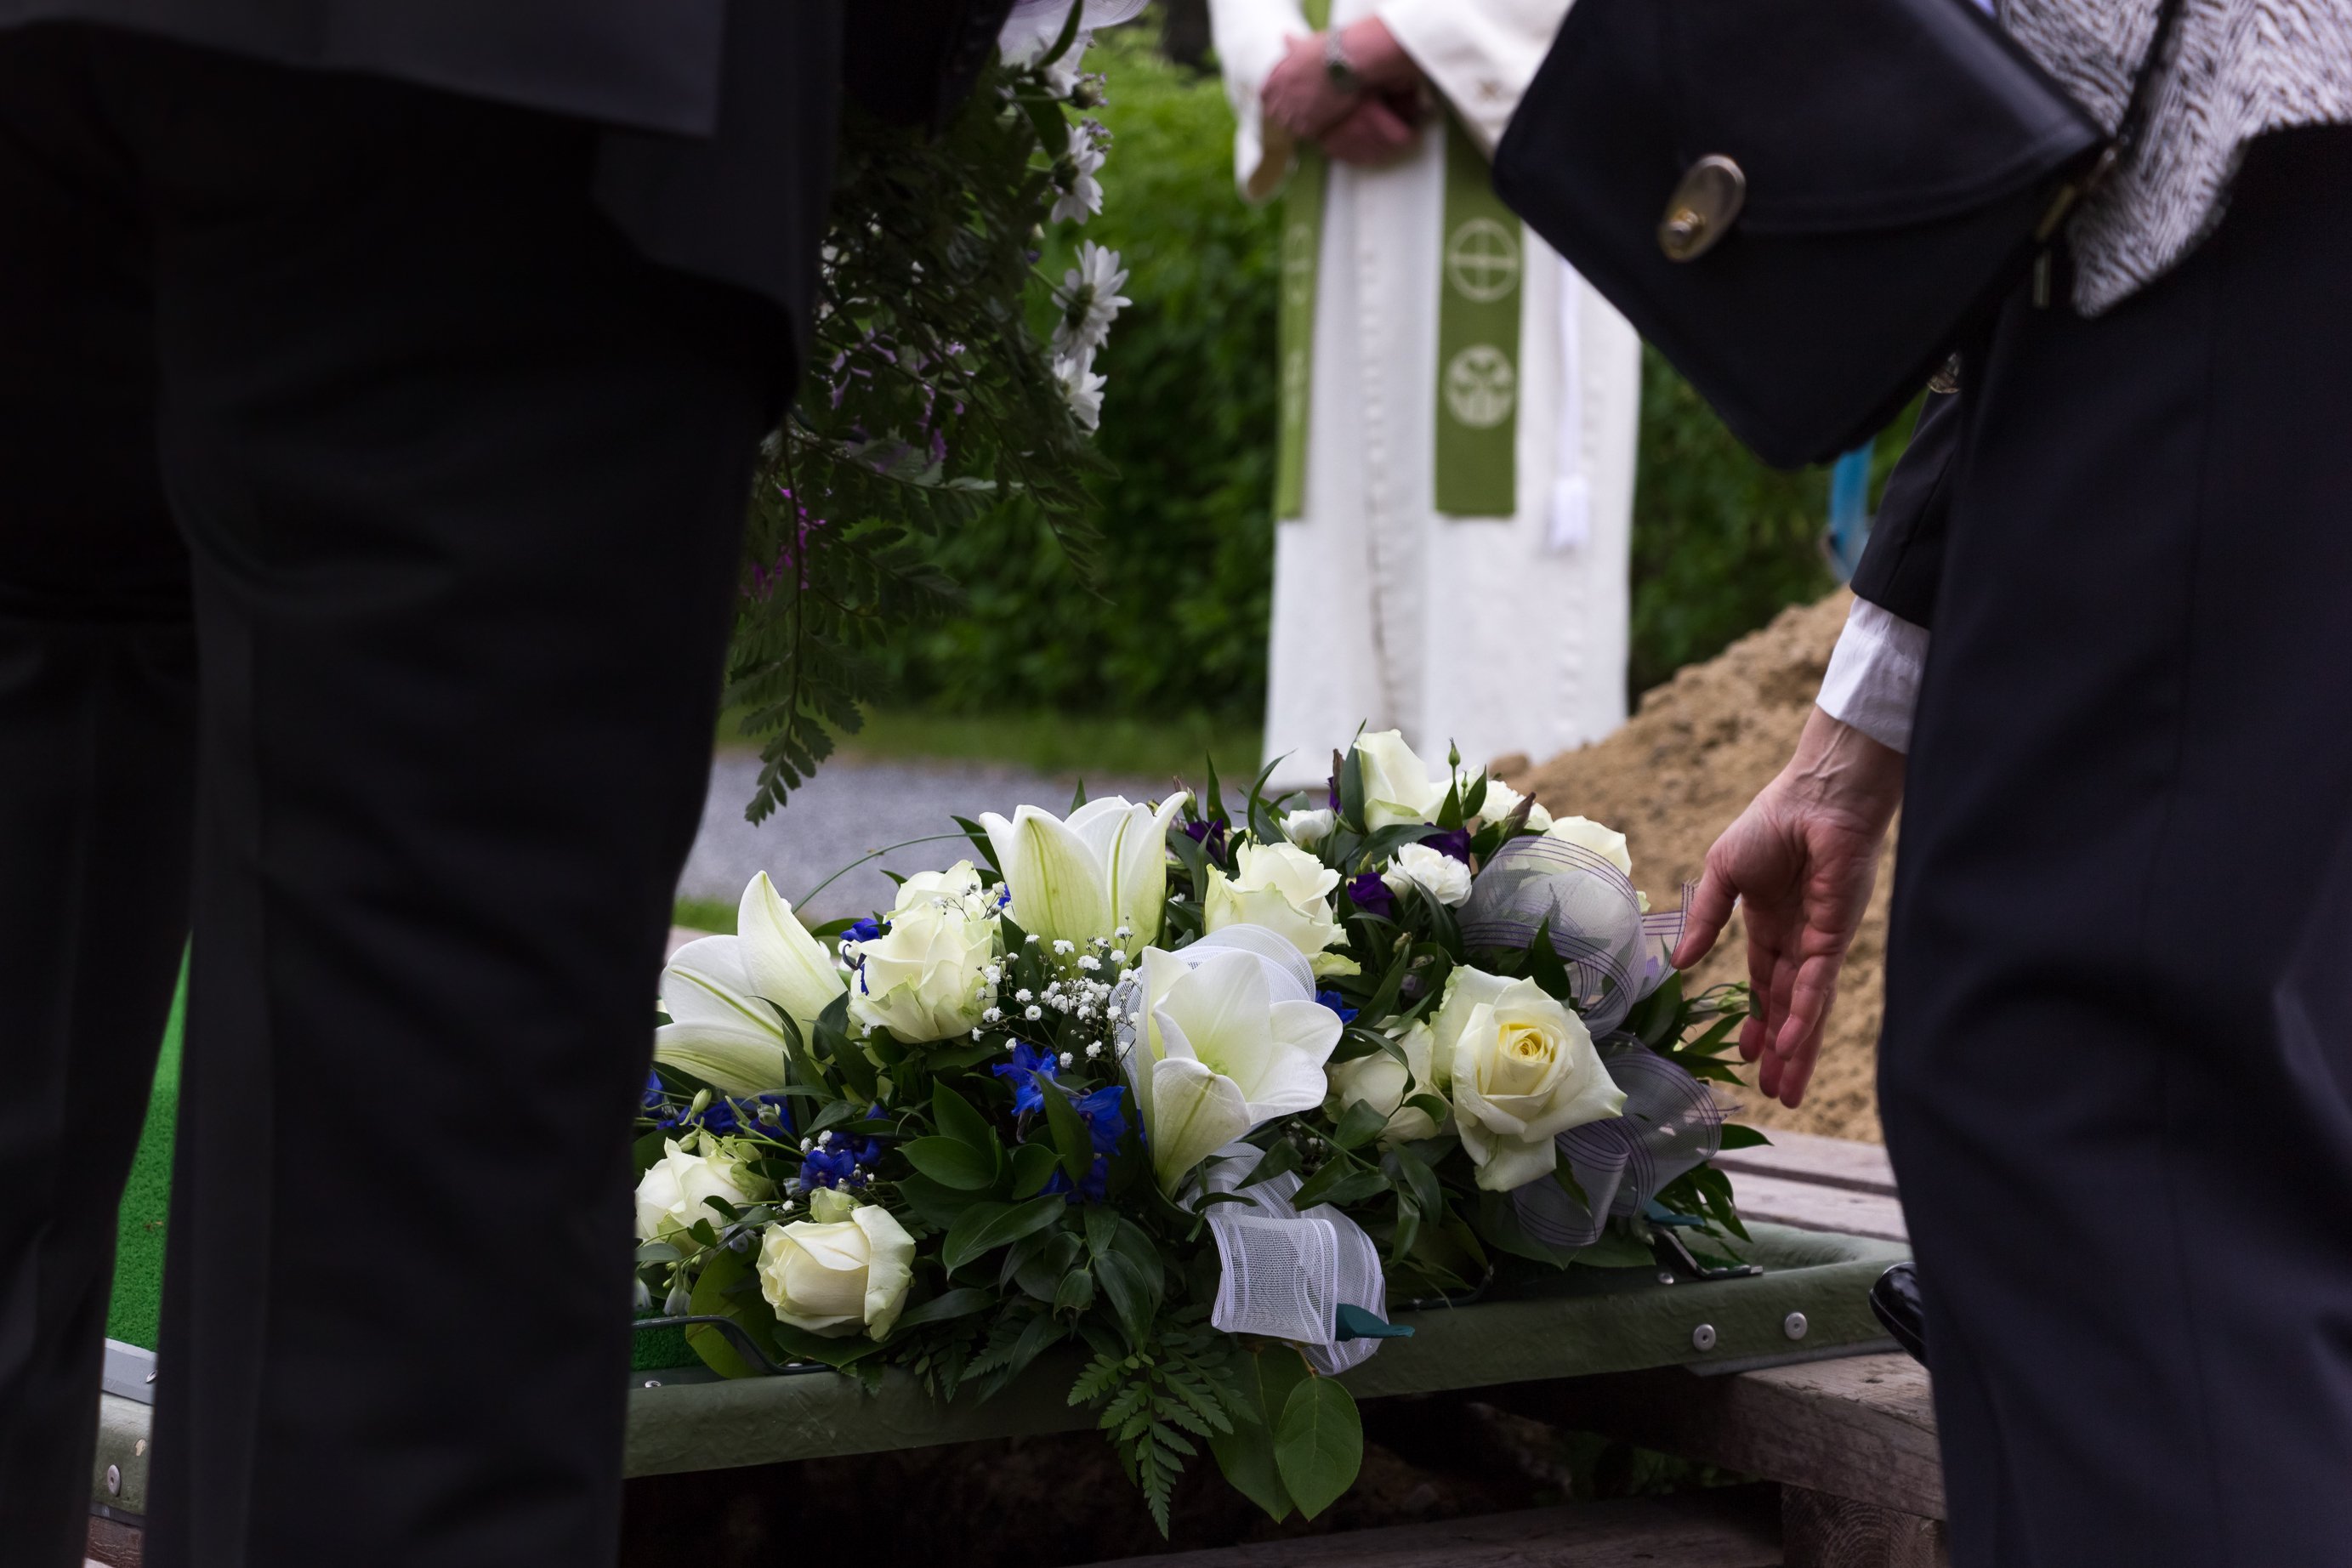 Frau, die bei einer Beerdigung Blumen auf ein Grab legt | Quelle: Shutterstock